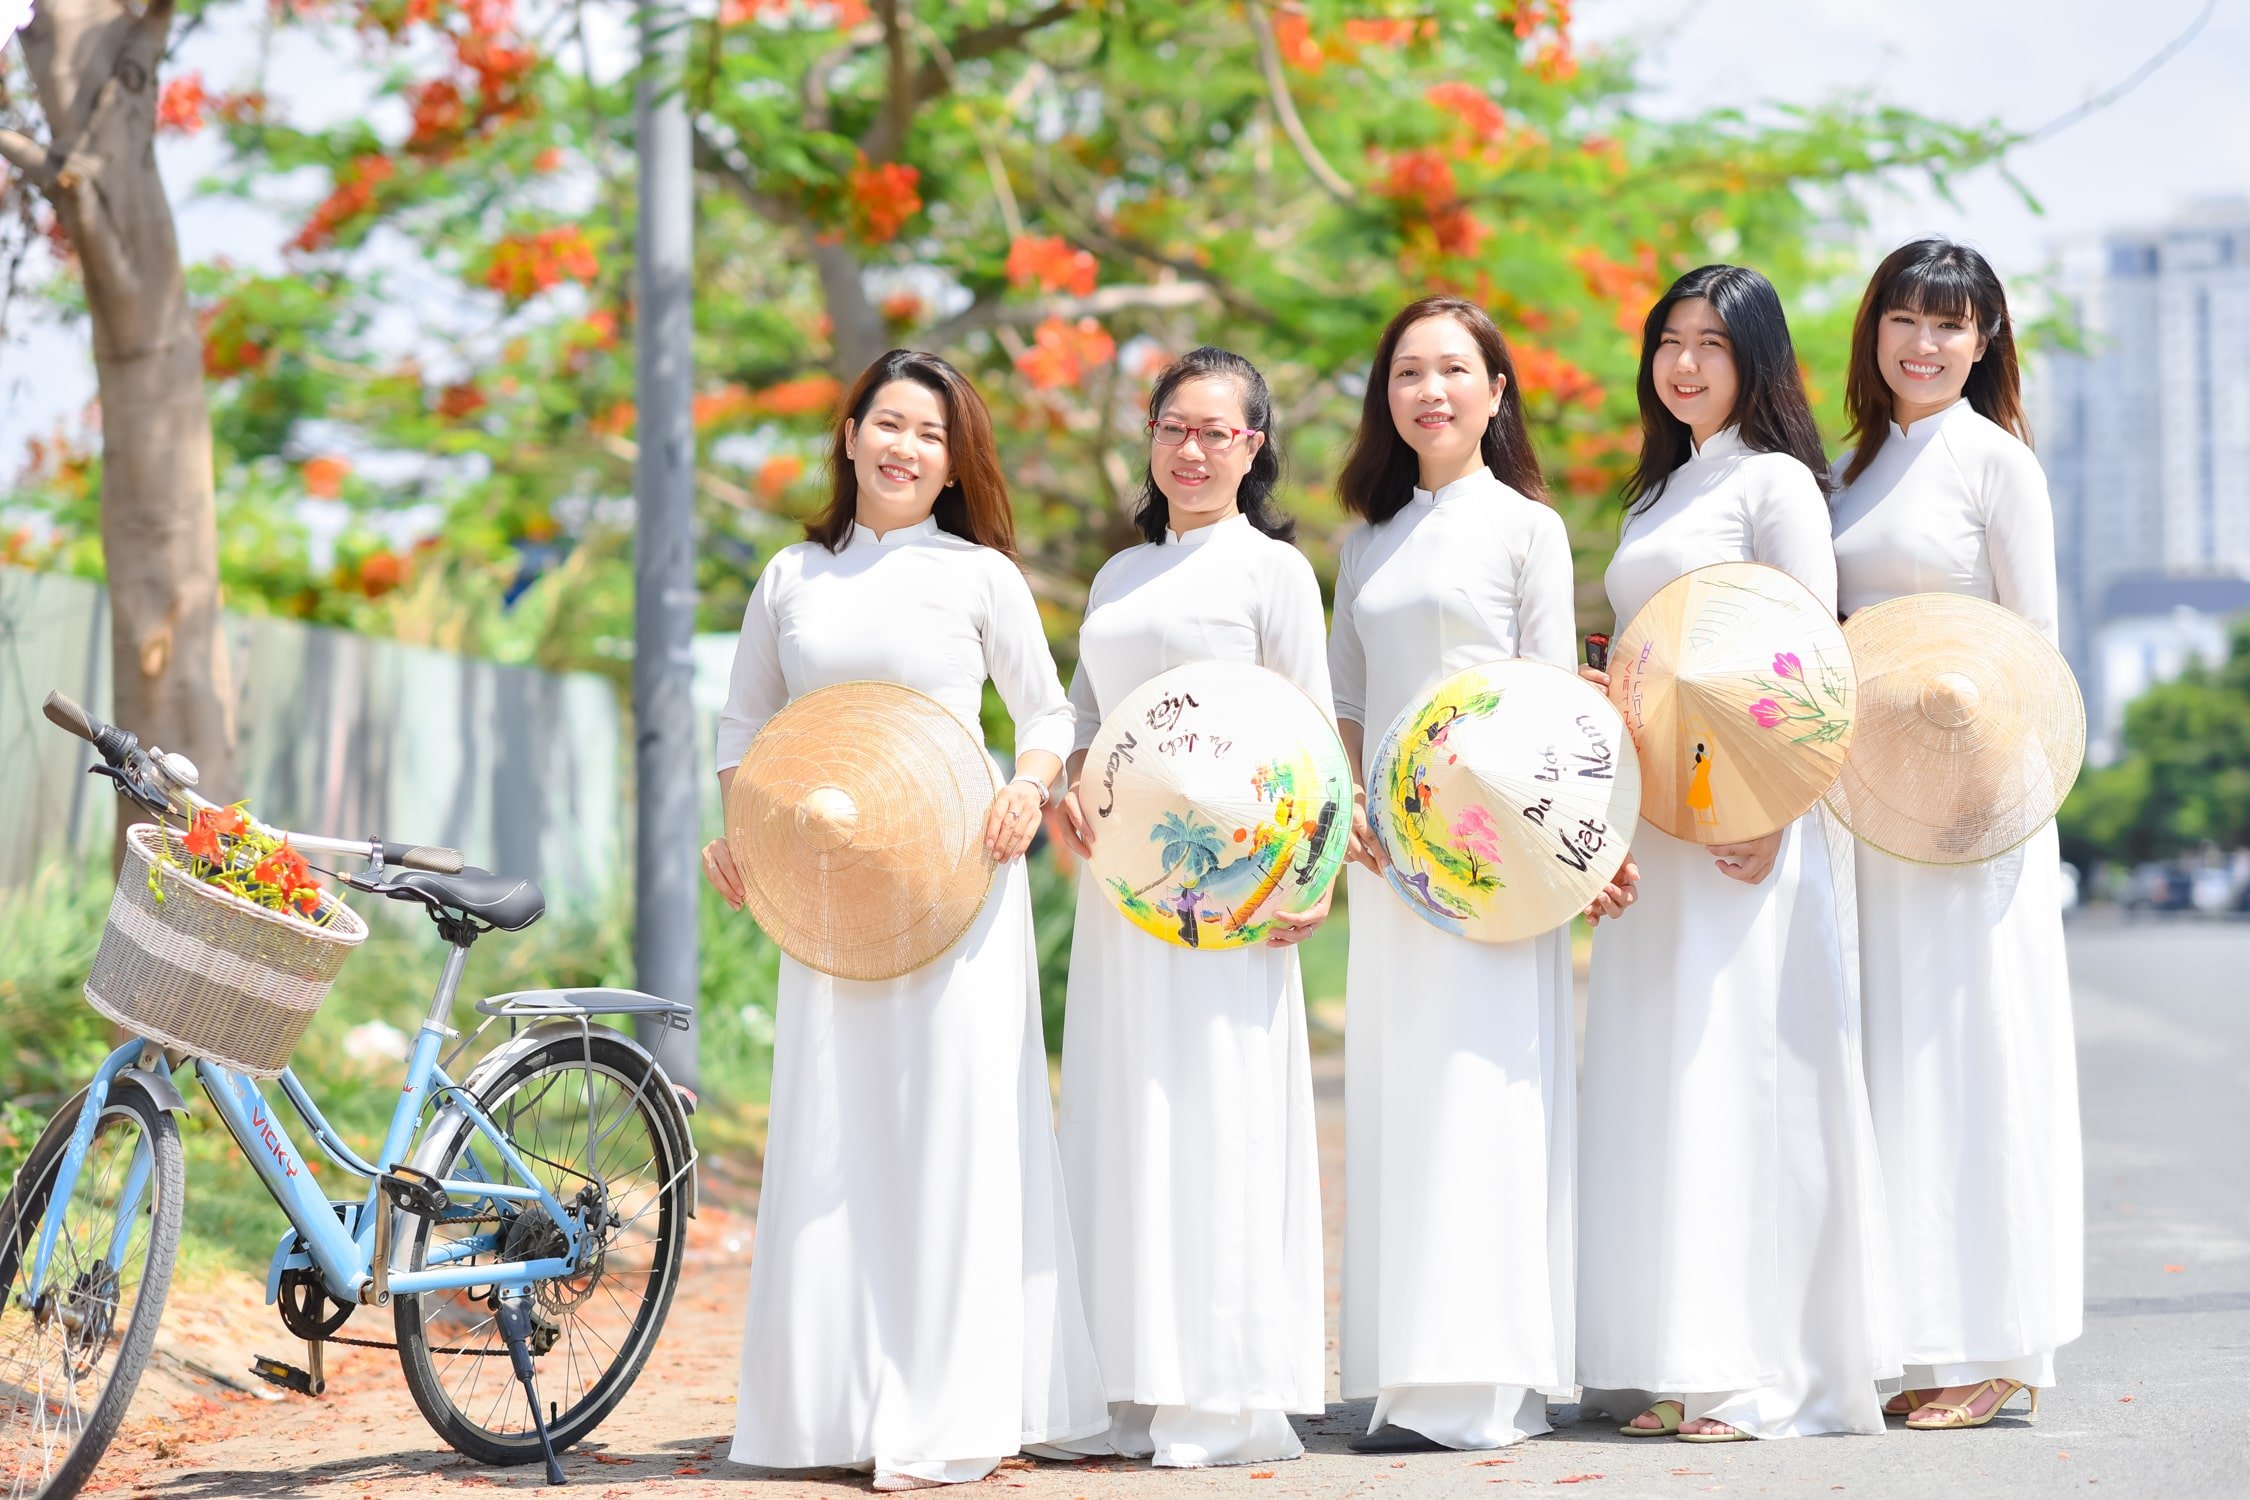 Anh hoa phuong 2 min - Tổng hợp concept chụp ảnh với hoa phượng tháng 5 đẹp – HThao Studio